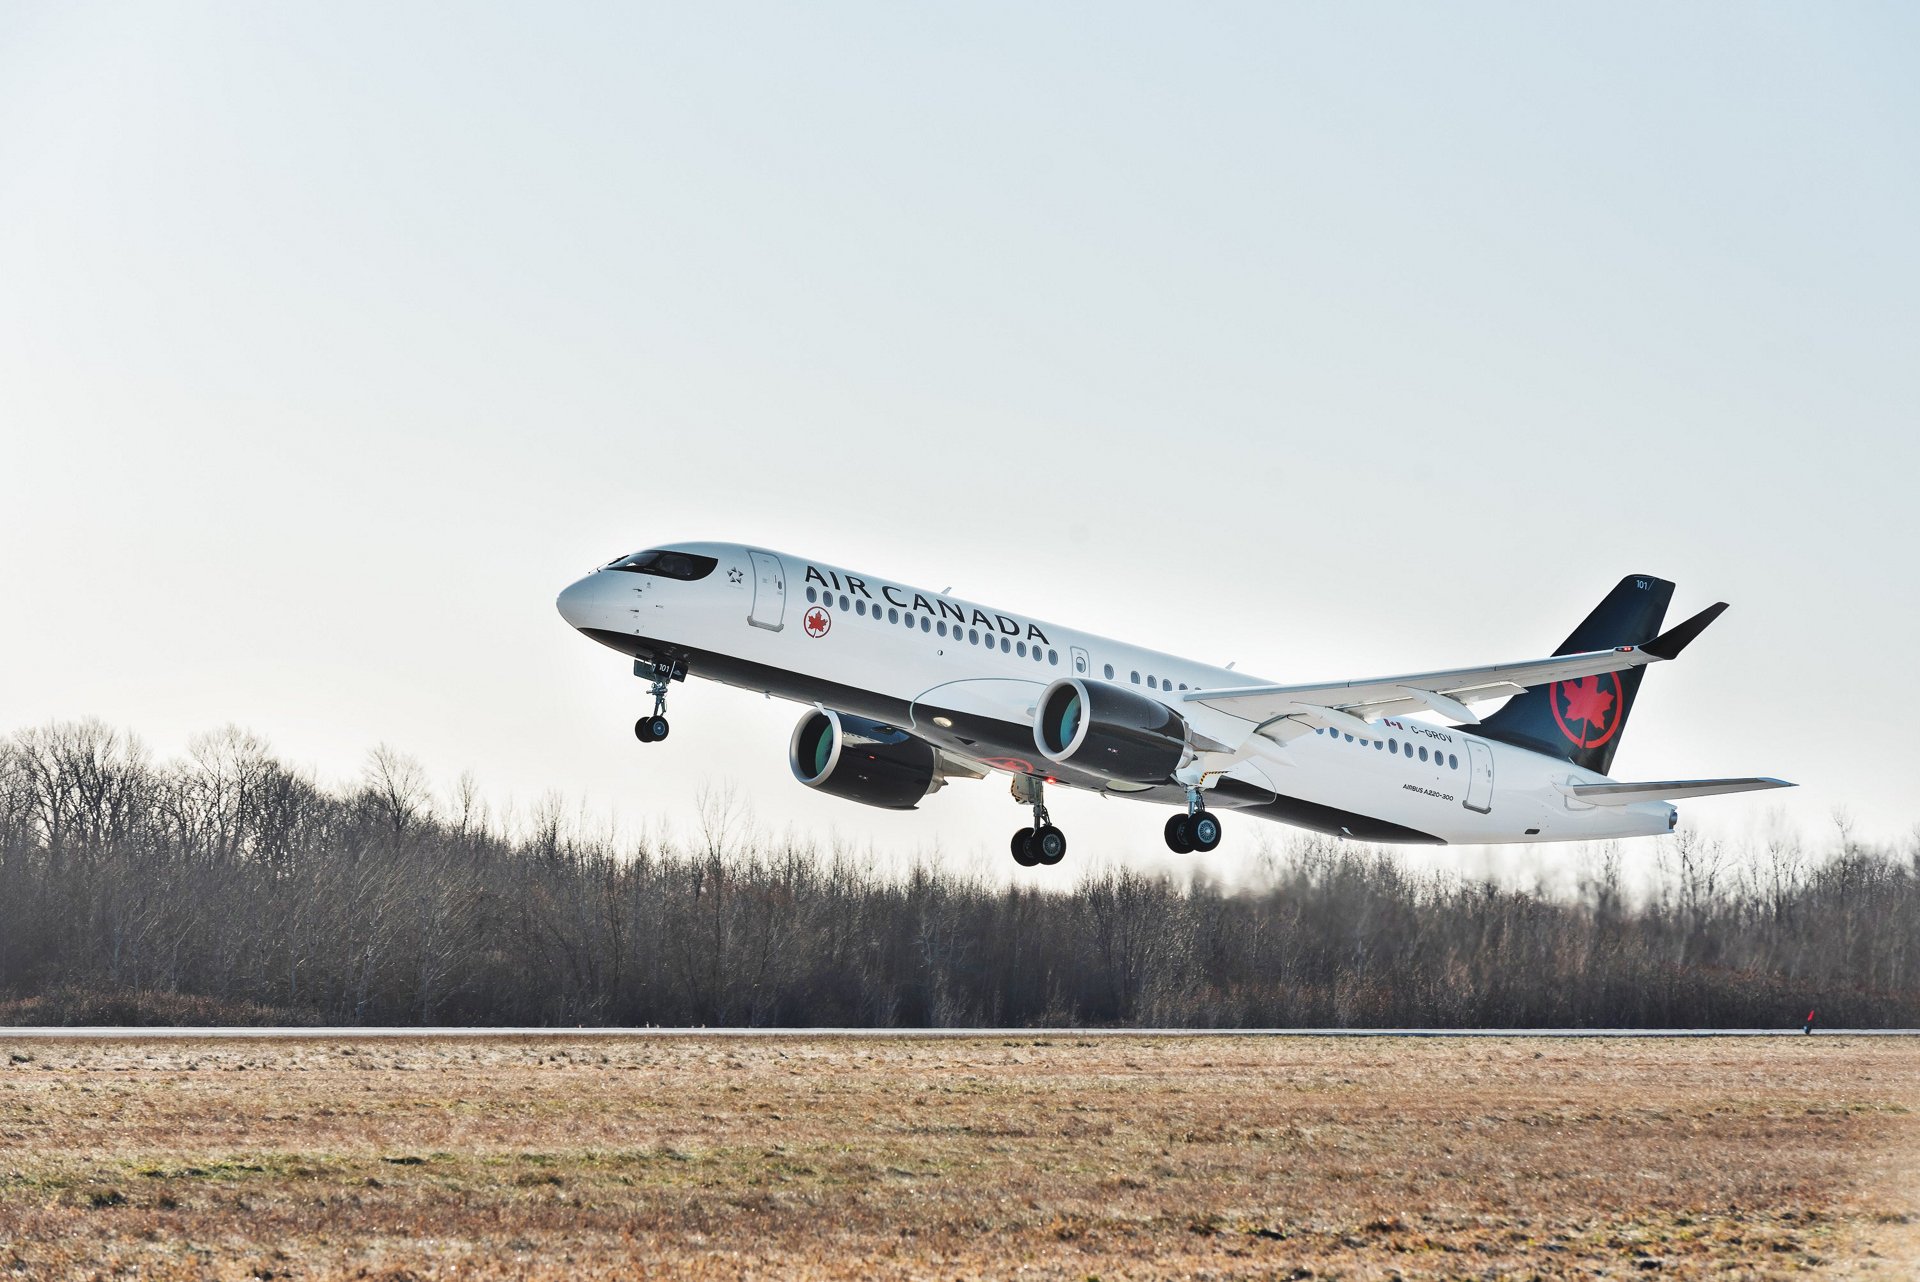 [新服務]AIR CANADA加拿大航空公司推出全新加拿大意象的新制服新形象 | TFT常旅客